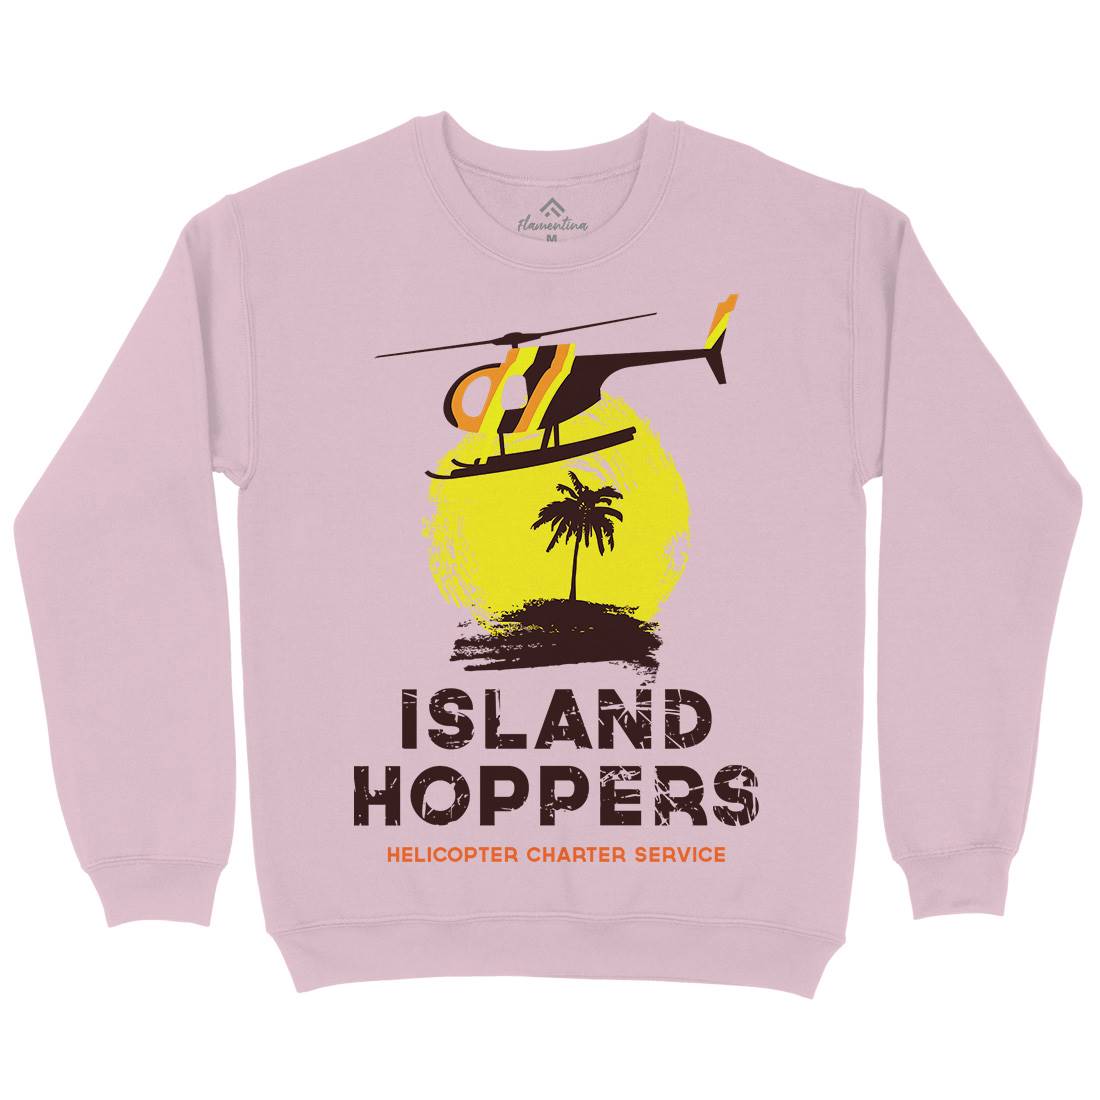 Island Hoppers Kids Crew Neck Sweatshirt Vehicles D117